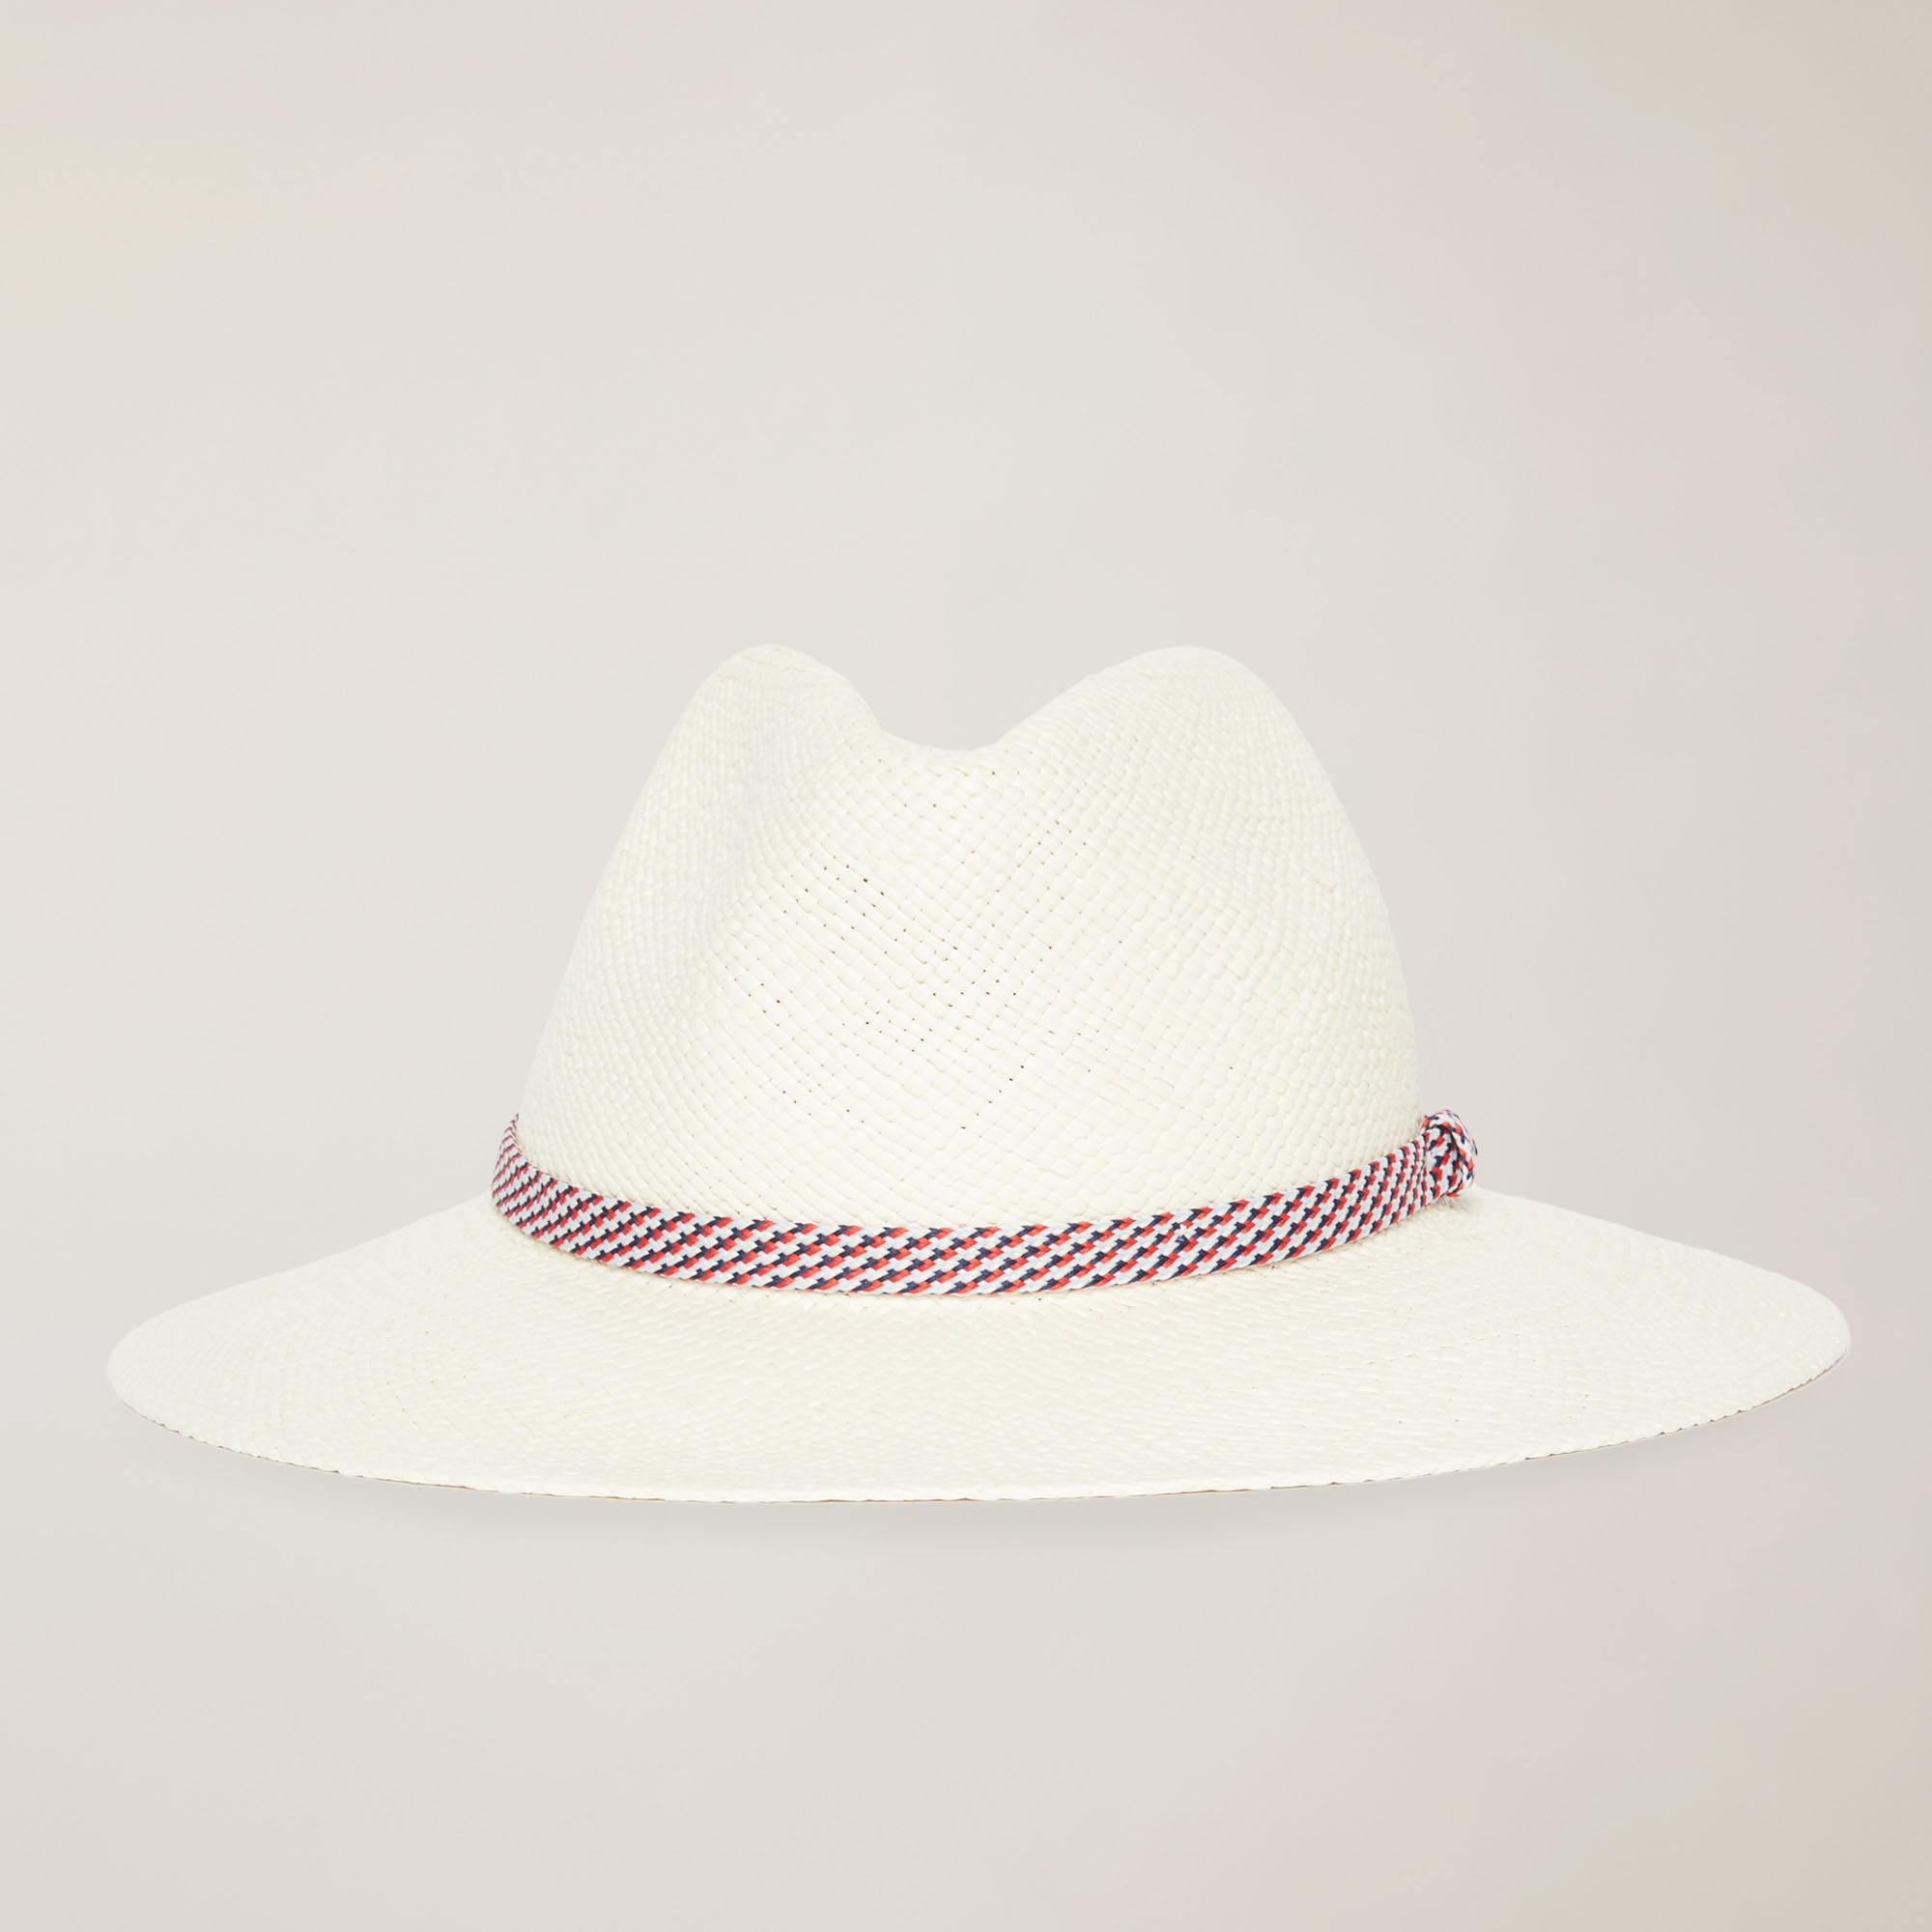 Panama Fabric Fedora Hat with Ribbon, Beige, large